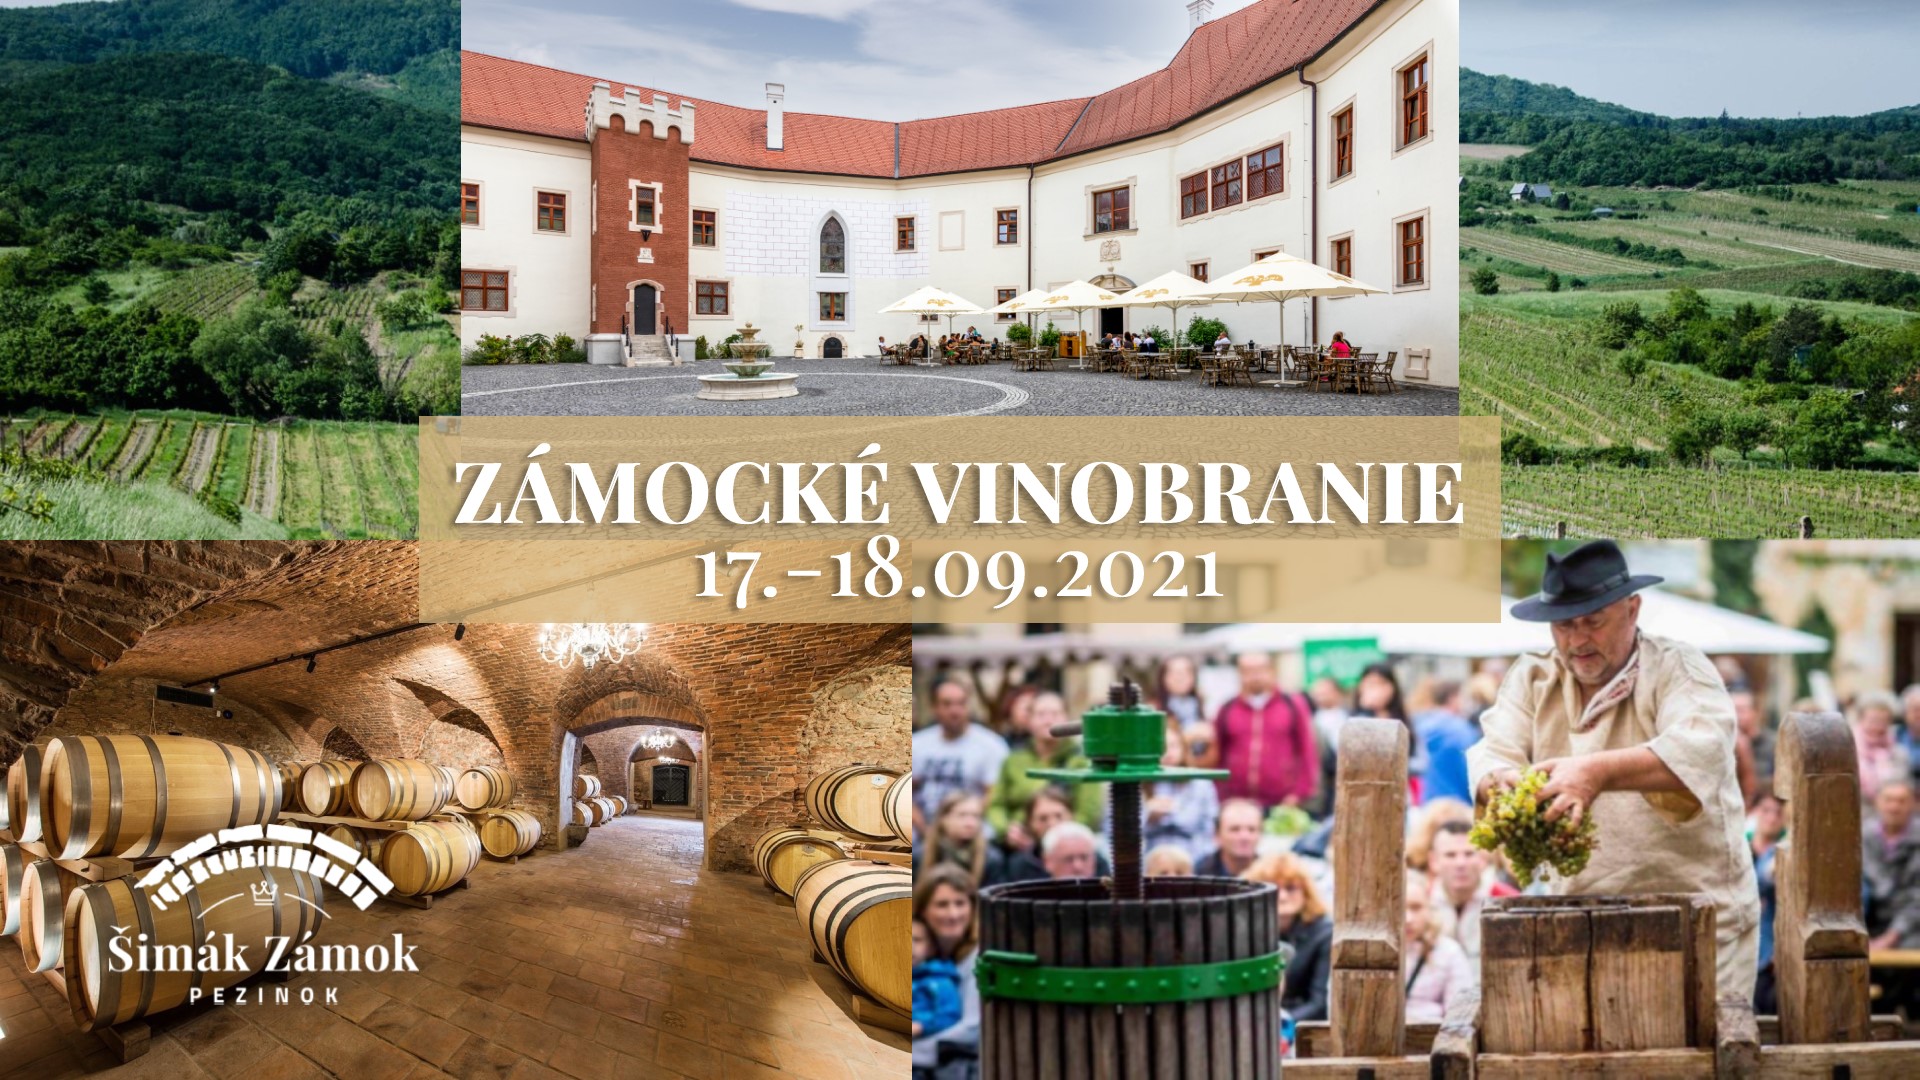 NOV - - - Zmock vinobranie 2021 Pezinok